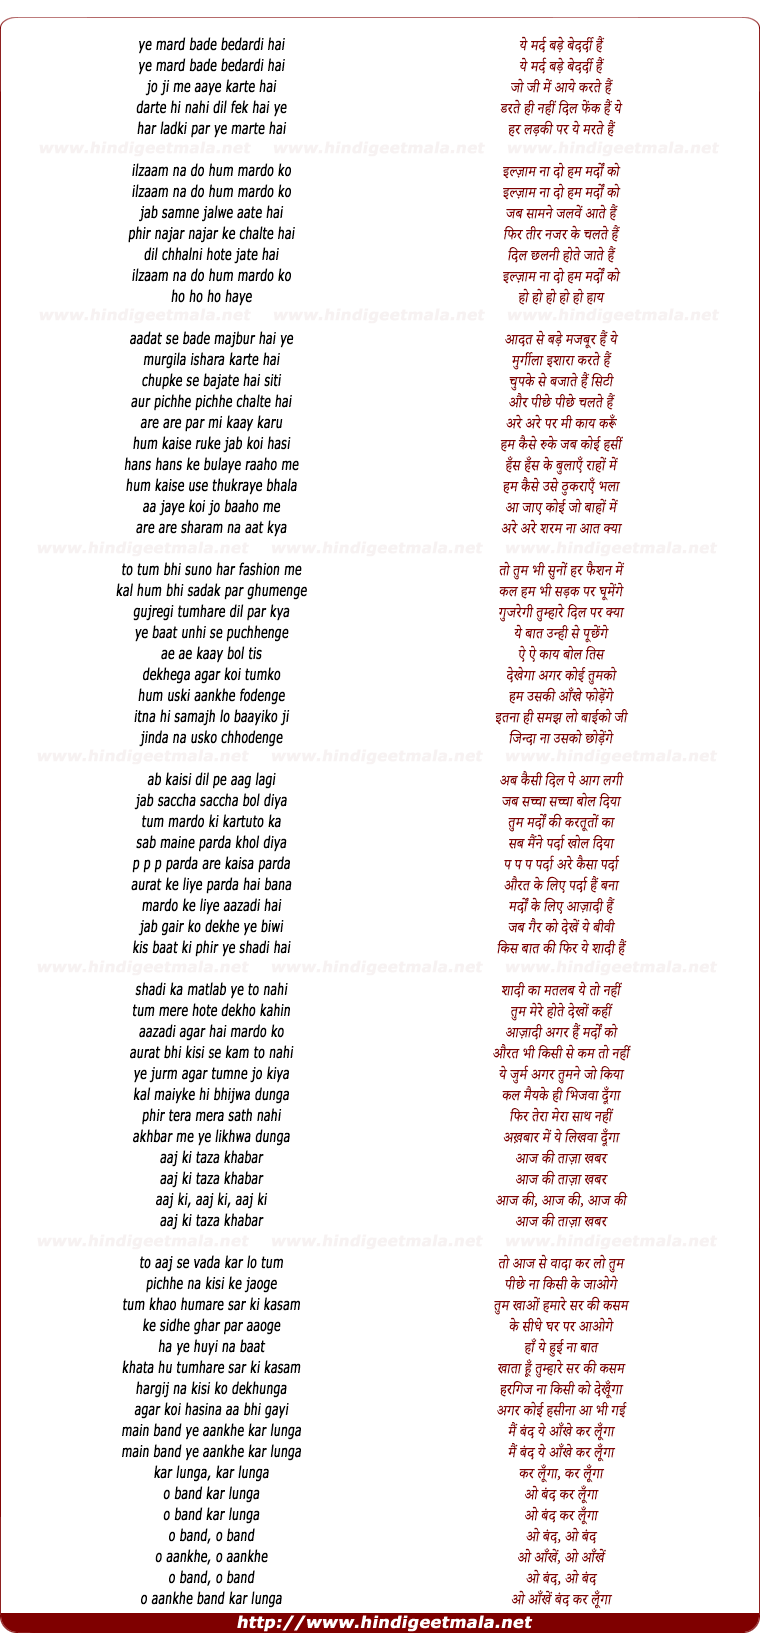 lyrics of song Aataa Aayig Kaye Ye Mard Bade Bade Bedardi Hai